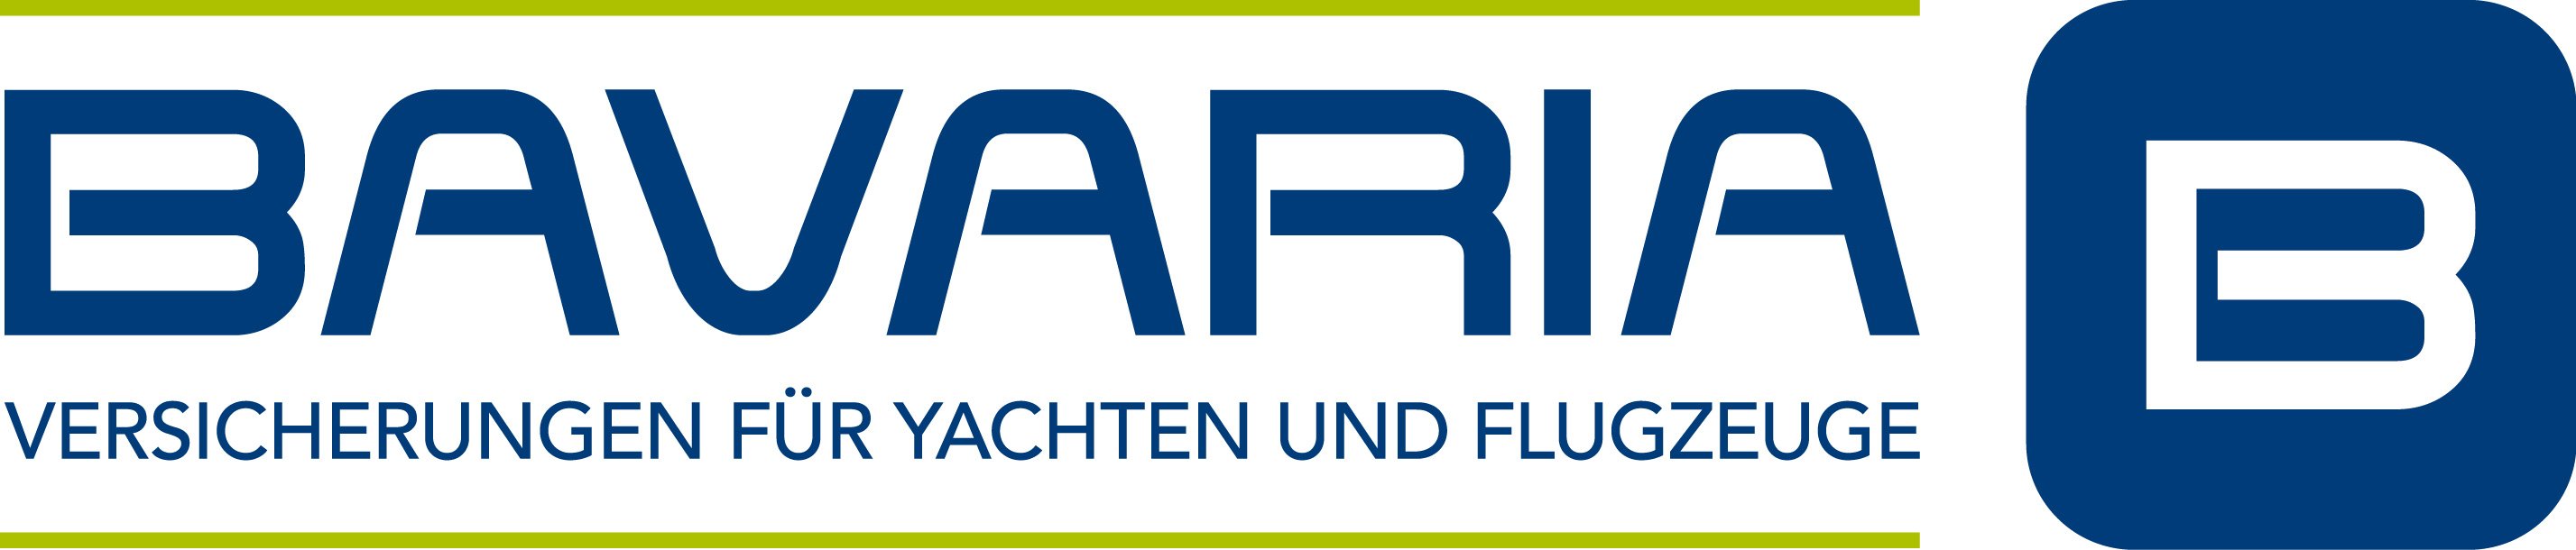 Bavaria_Logo_2017.jpg.jpg